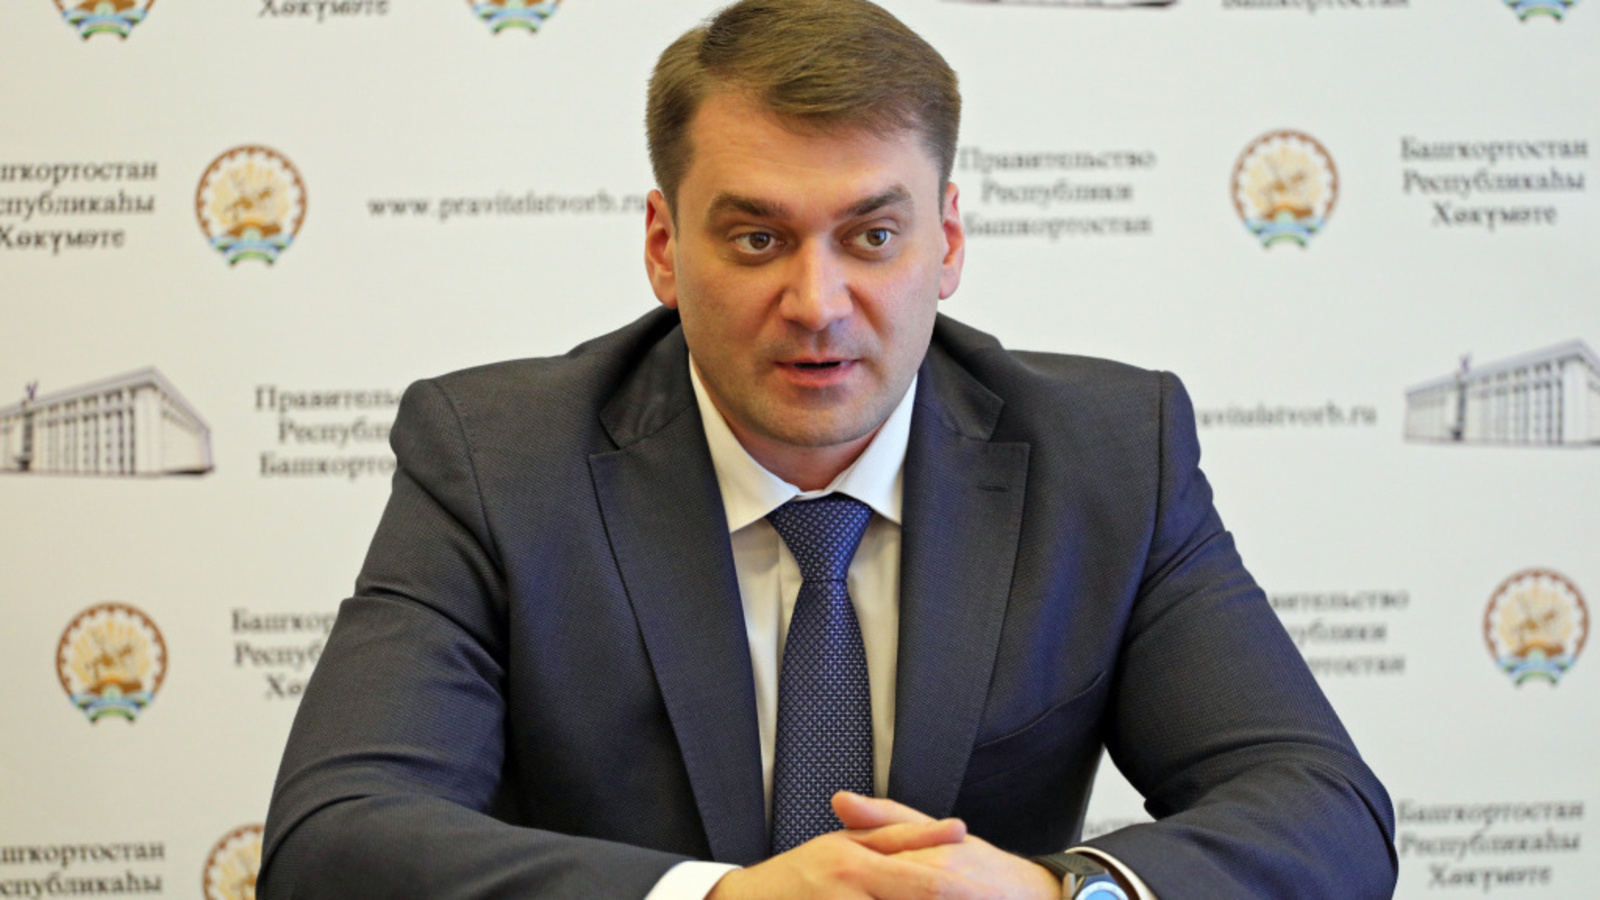 Министр торговли  и услуг Башкирии Алексей Гусев в интервью телеканалу БСТ